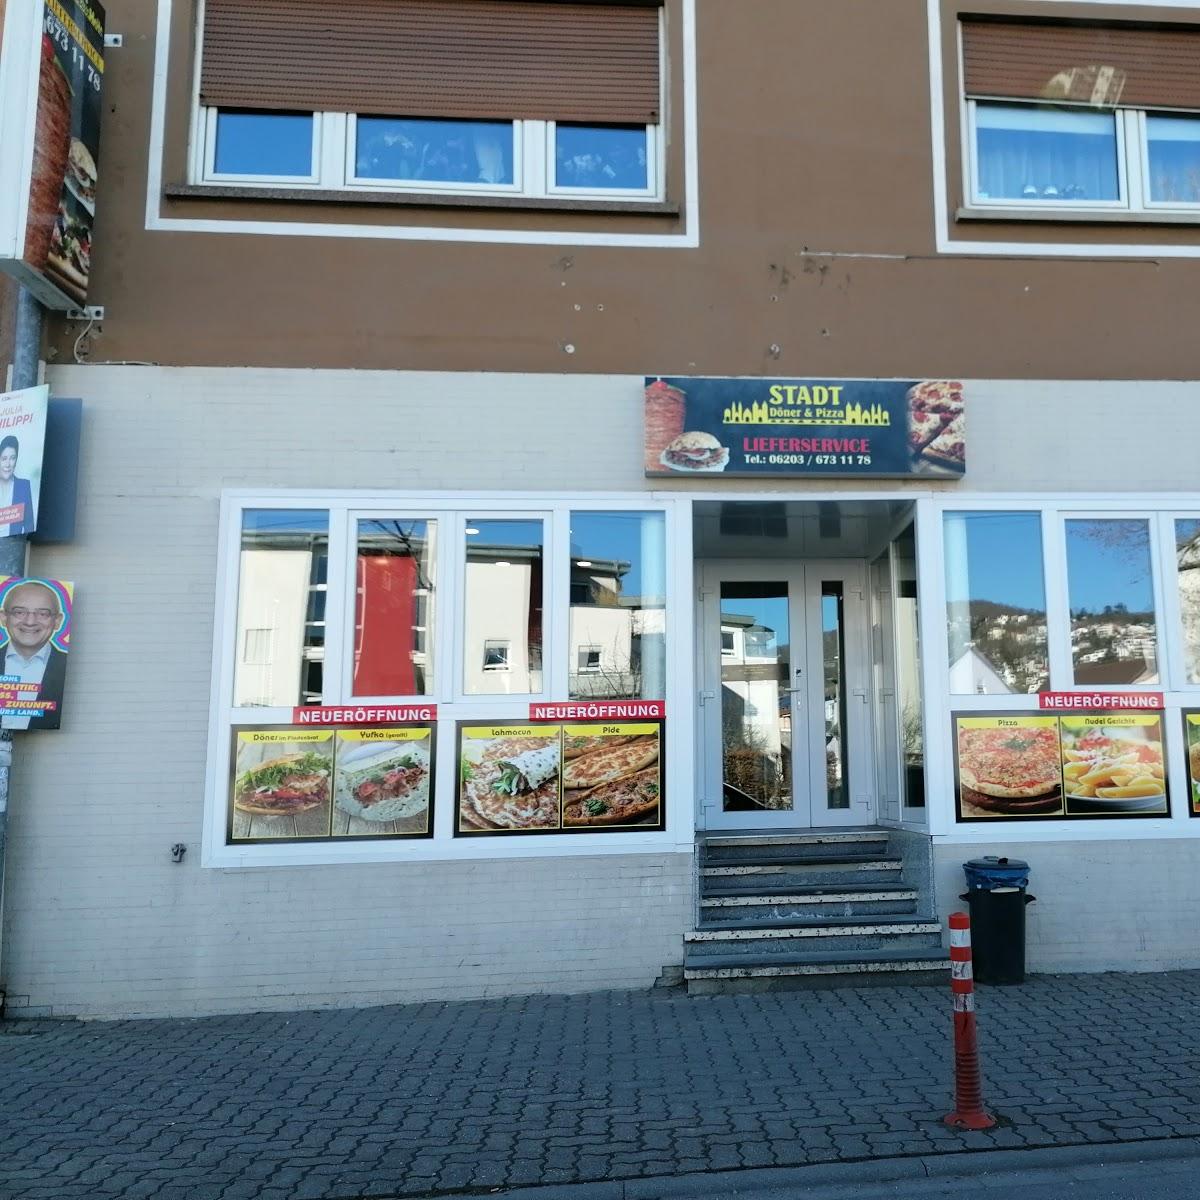 Restaurant "STADT Döner & Pizza" in Schriesheim